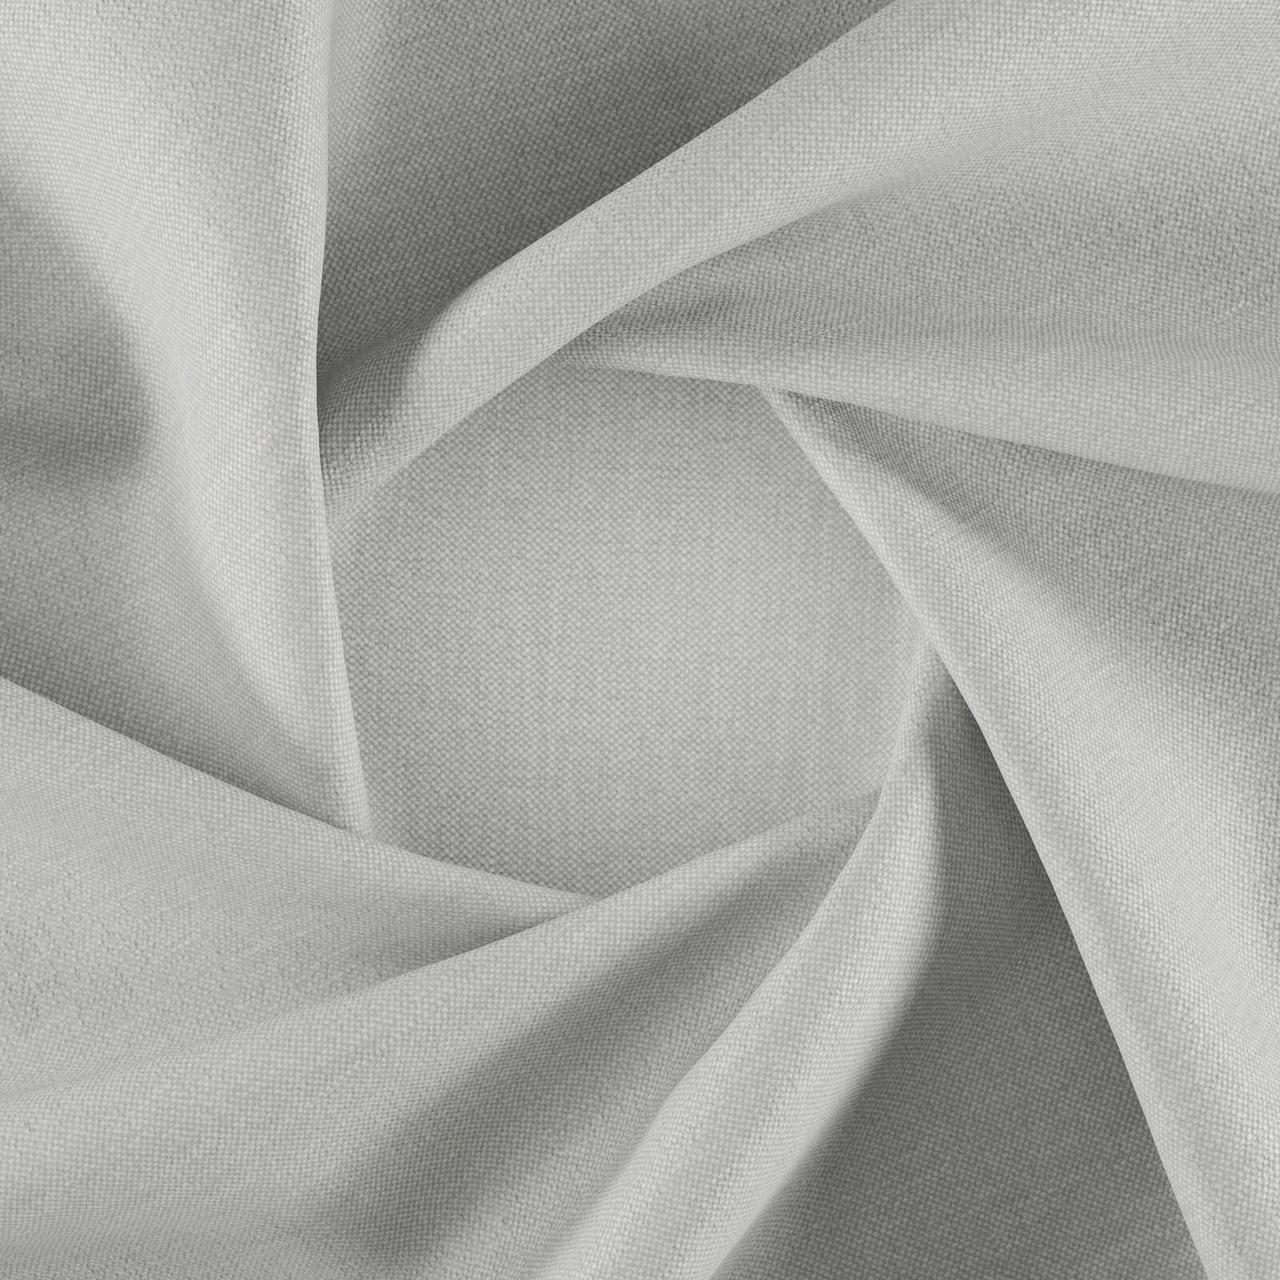 Тканина для перетяжки м'яких меблів шеніл Перфекто (Perfecto) сіро-білого кольору